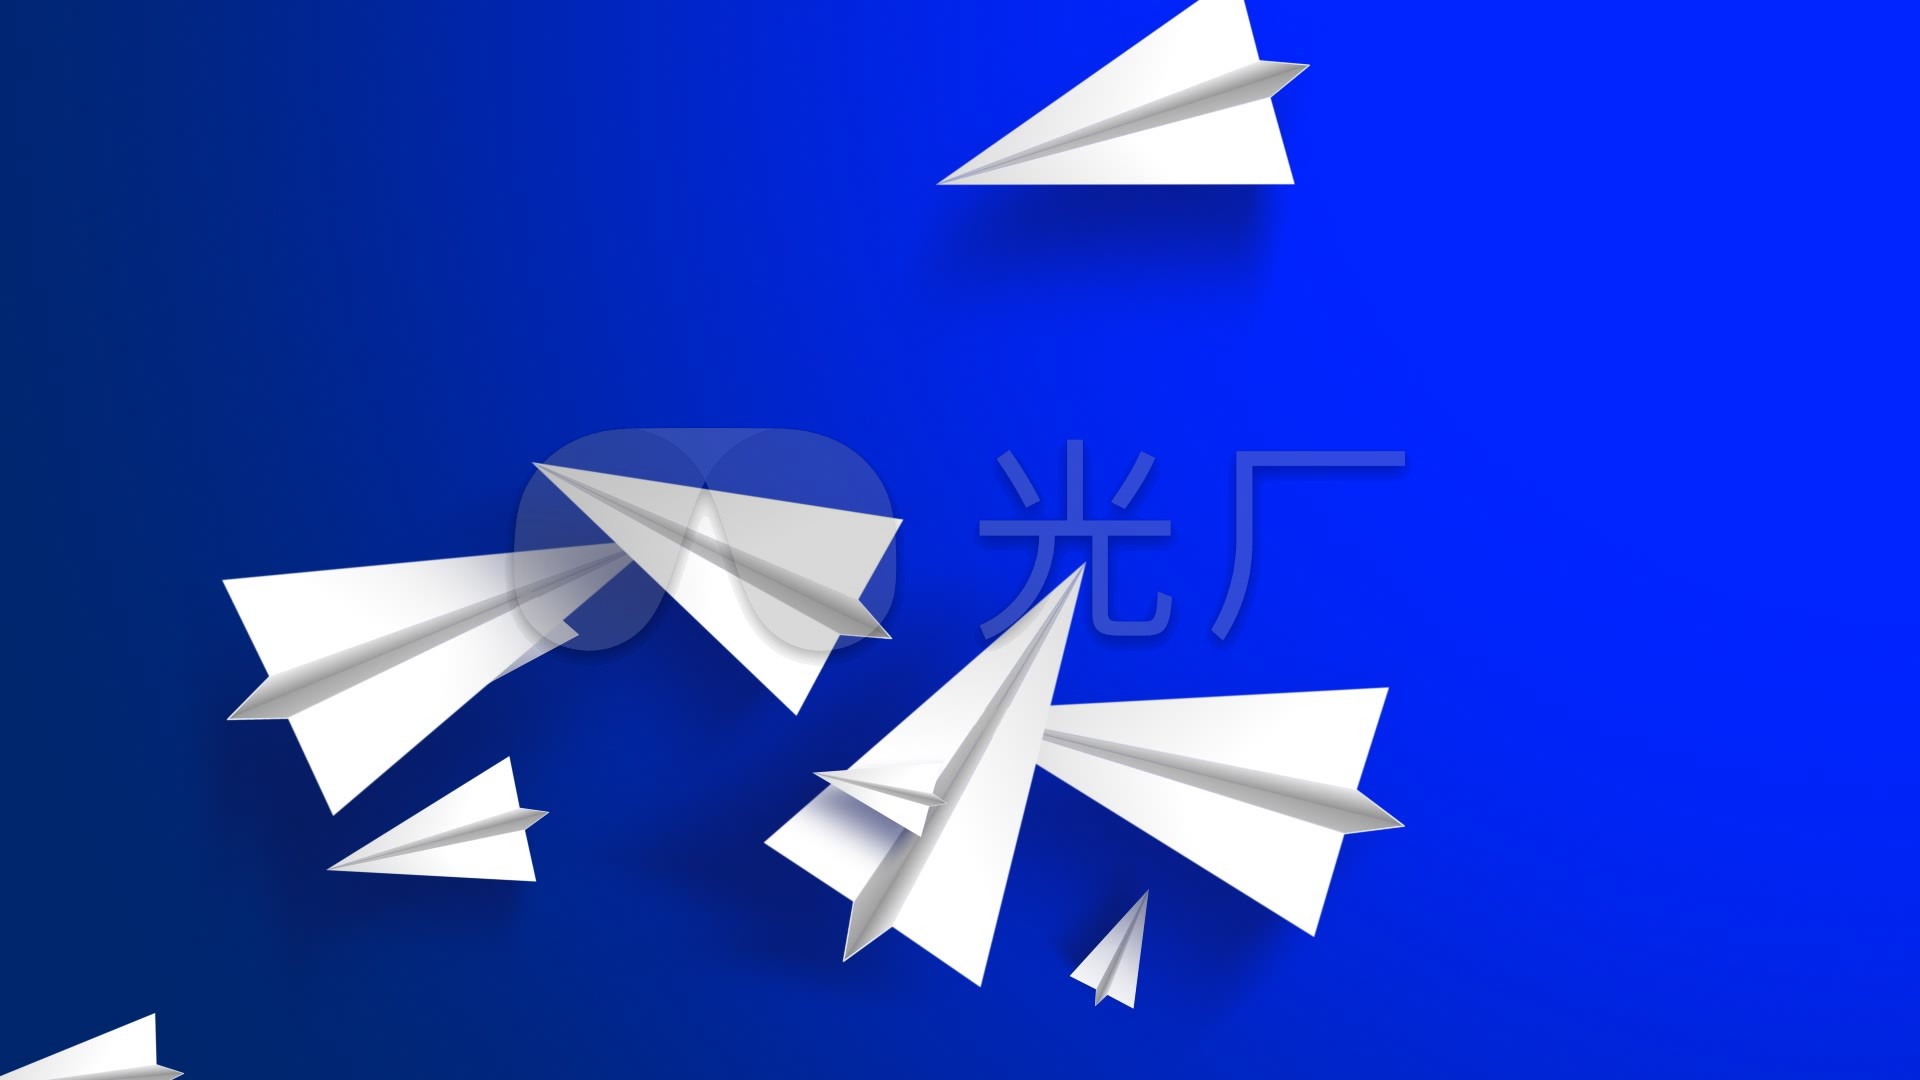 纸飞机软件下载下载-纸飞机软件下载 下载